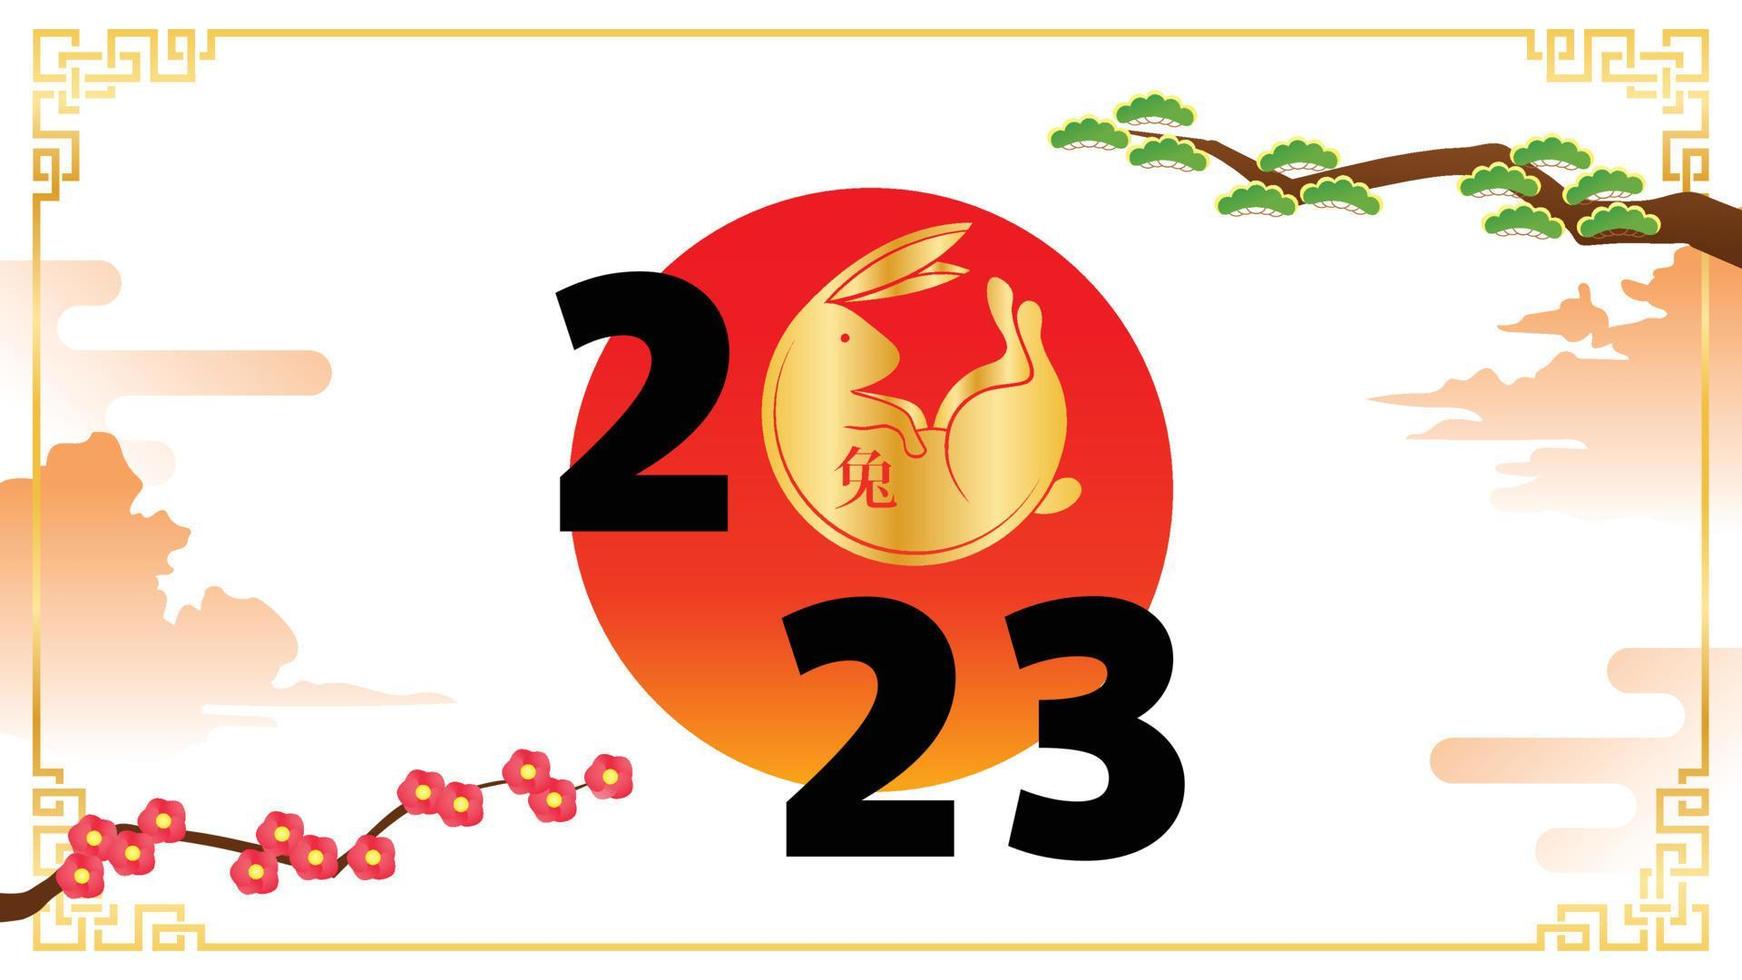 ilustração em vetor banner do ano novo chinês 2023